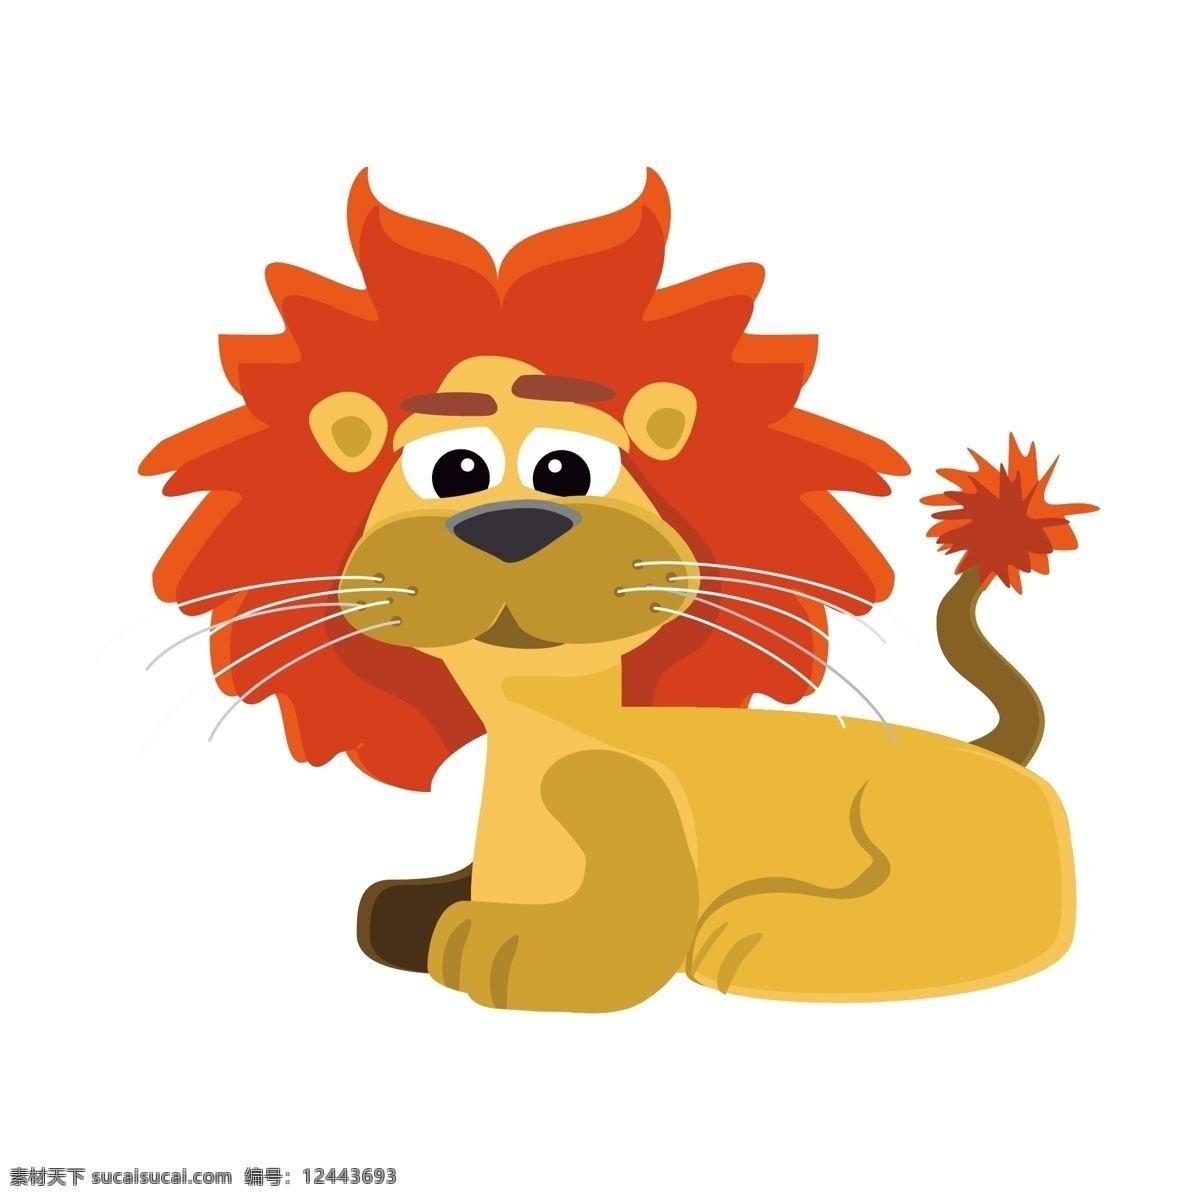 狮子 卡通动物 手绘 卡通 可爱 动物 插画 背景 矢量素材 矢量 卡通可爱动物